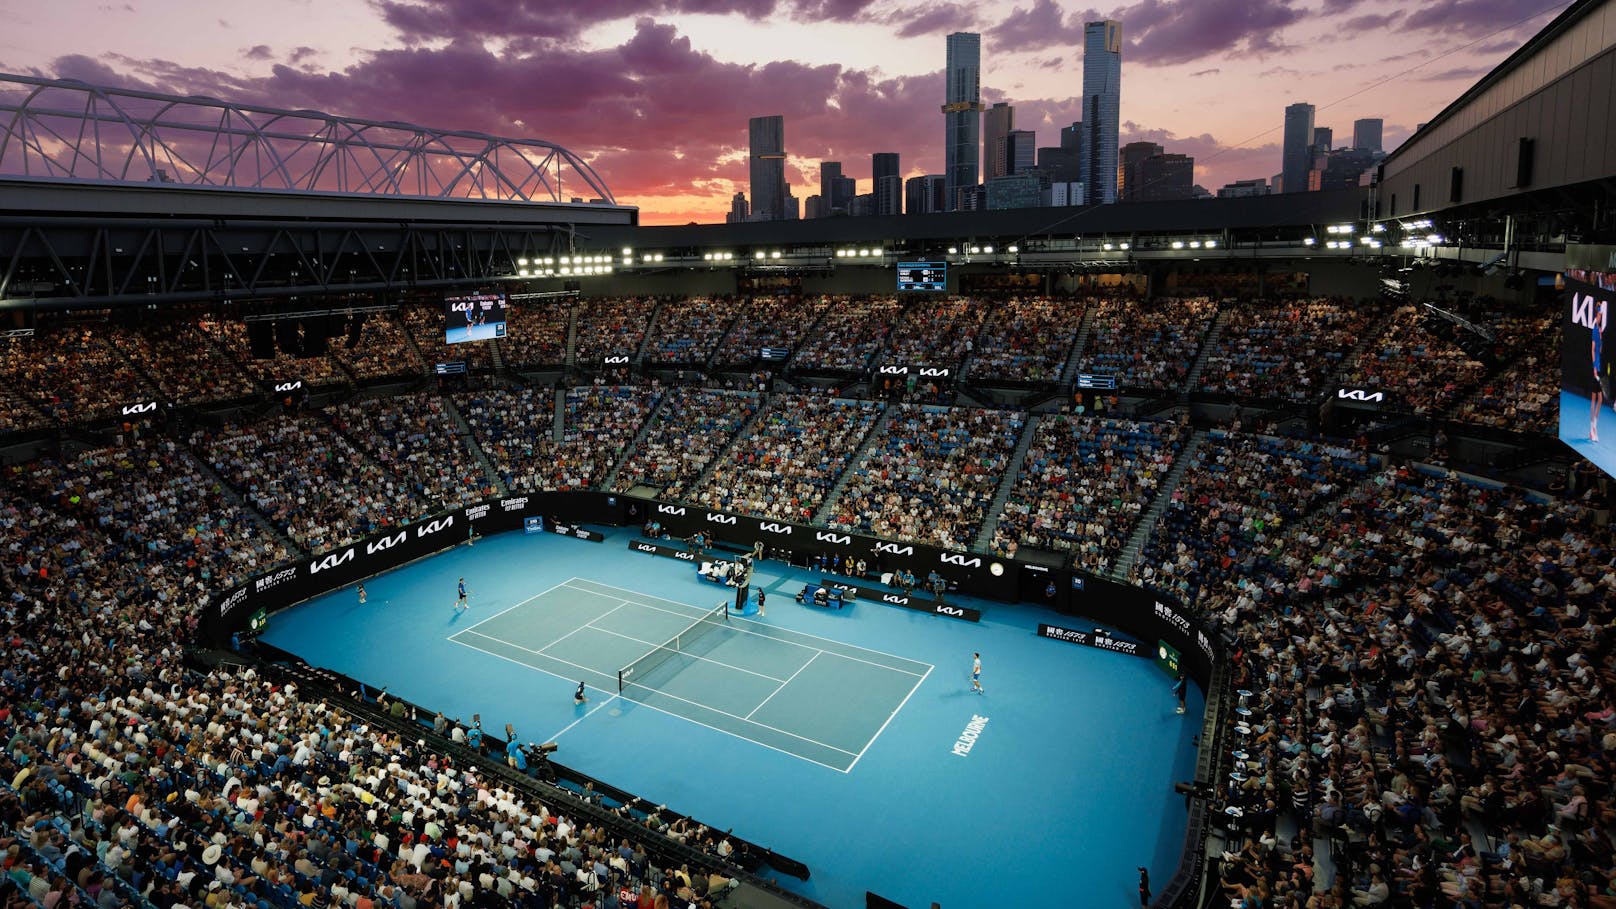 Jänner: Das erste Tennis-Highlight des Jahres steigt in Melbourne. Das Finale der Australian Open findet am 28. Jänner statt.